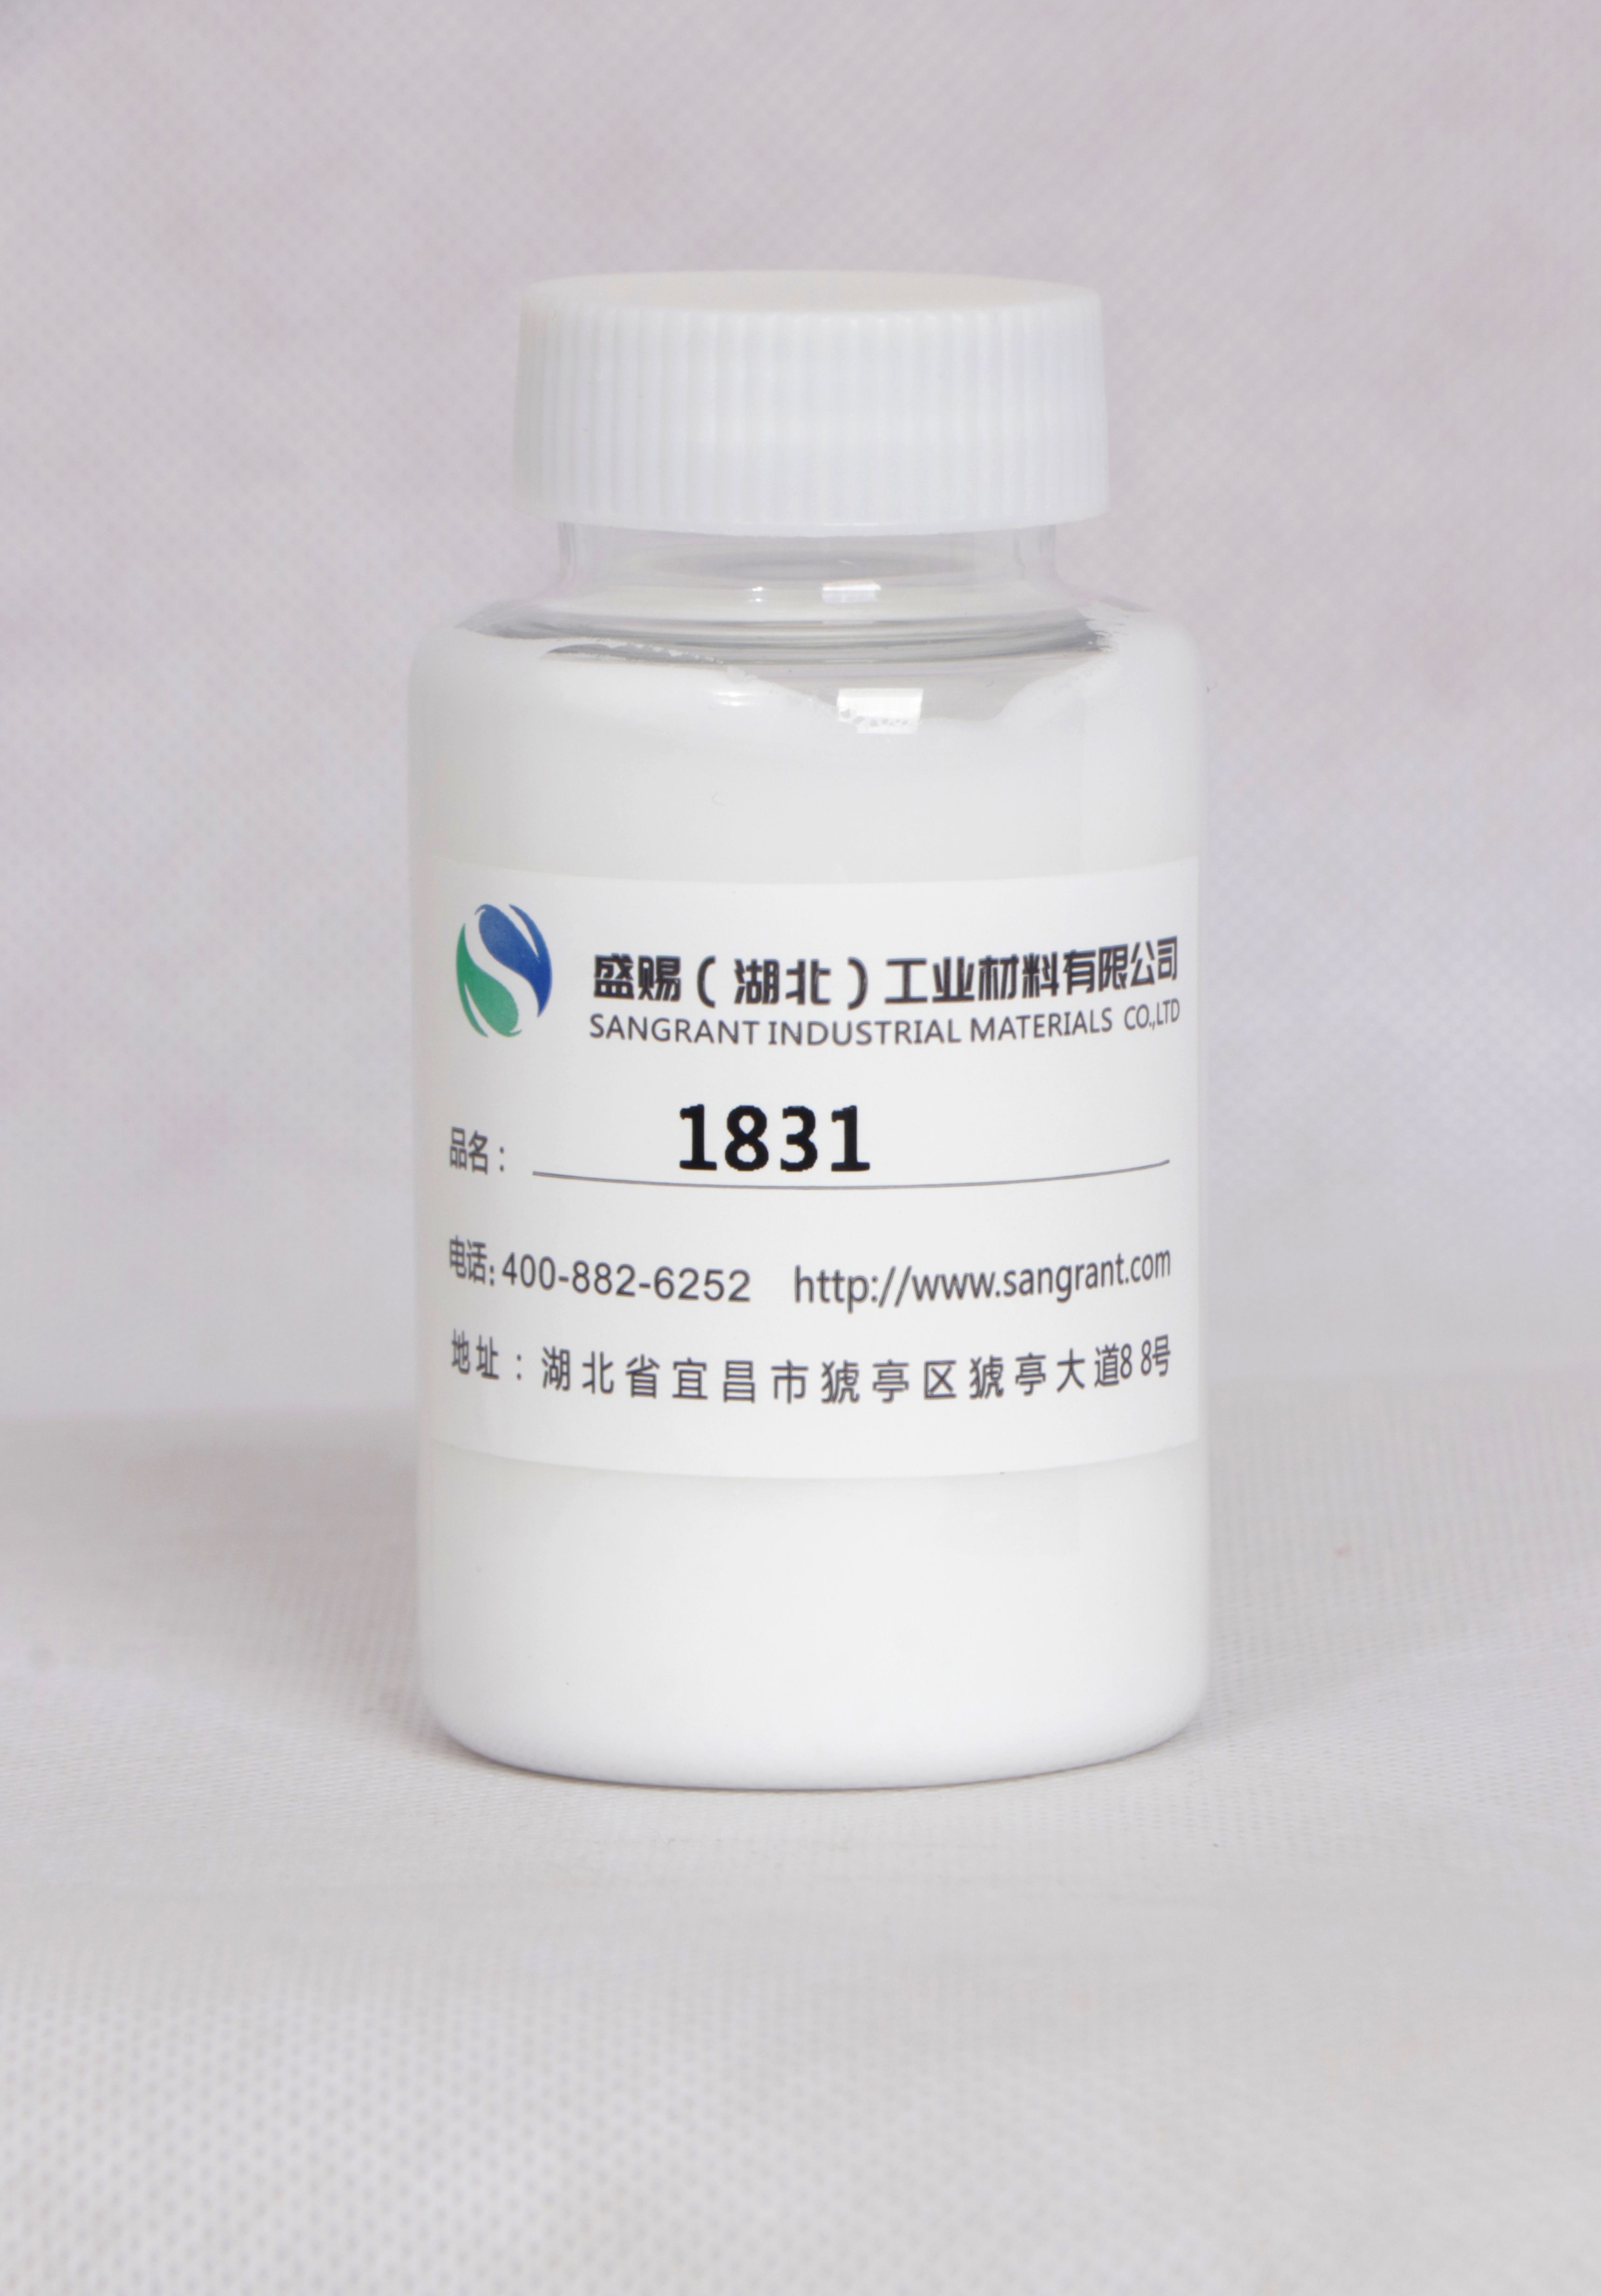 盛赐 1831 沥青乳化剂、柔顺剂、调理剂 质量稳定